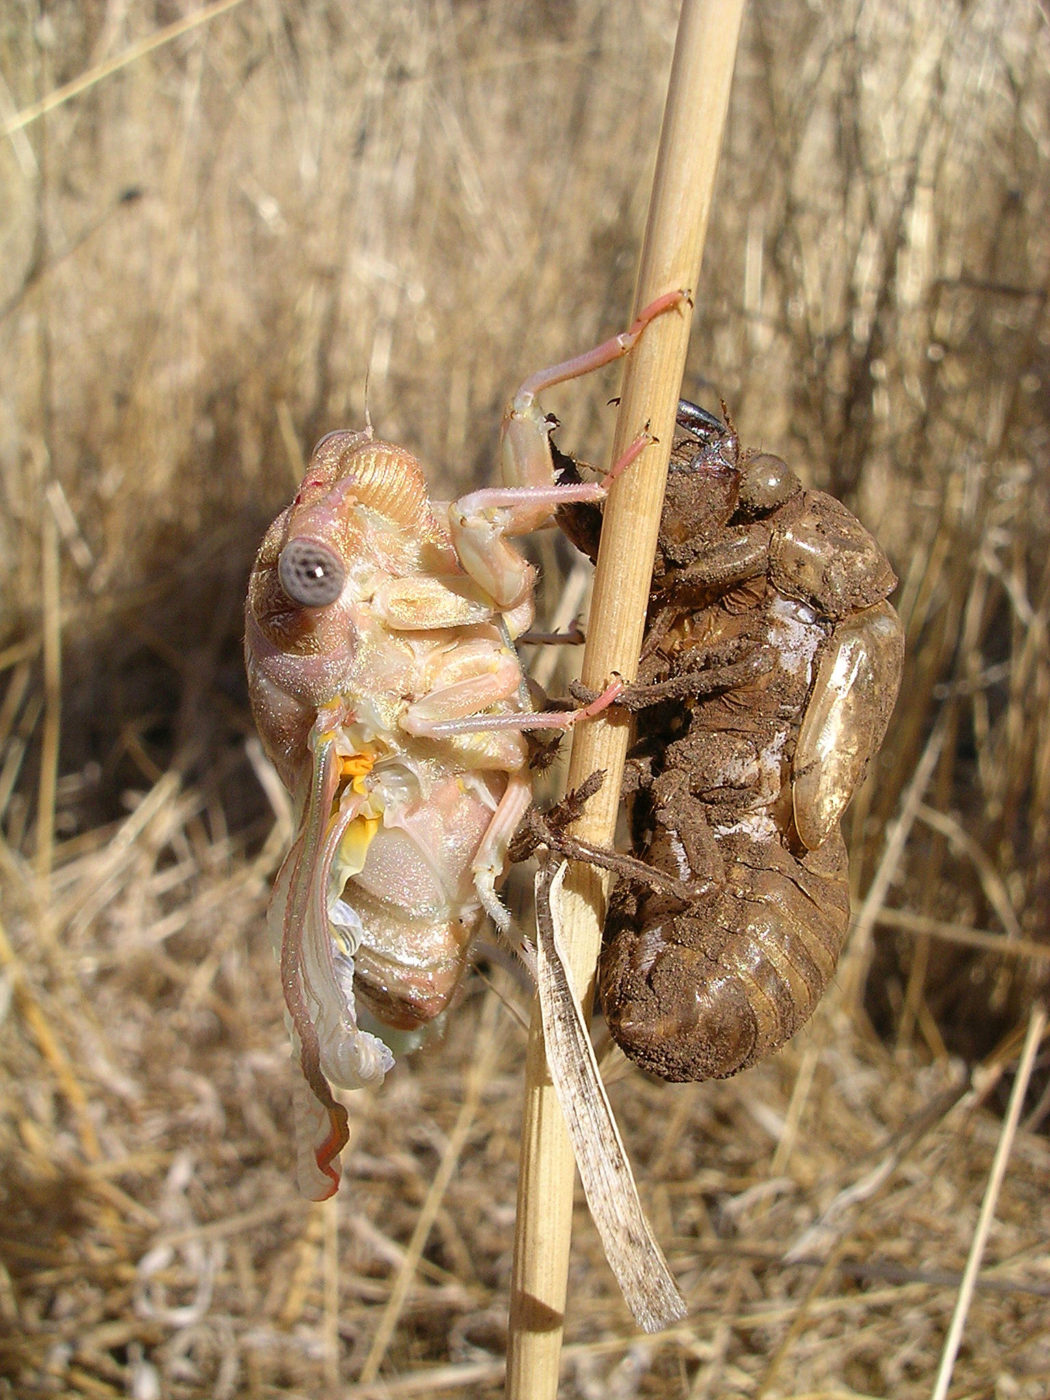 Cicada - newly emerged adult with shed exoskeleton